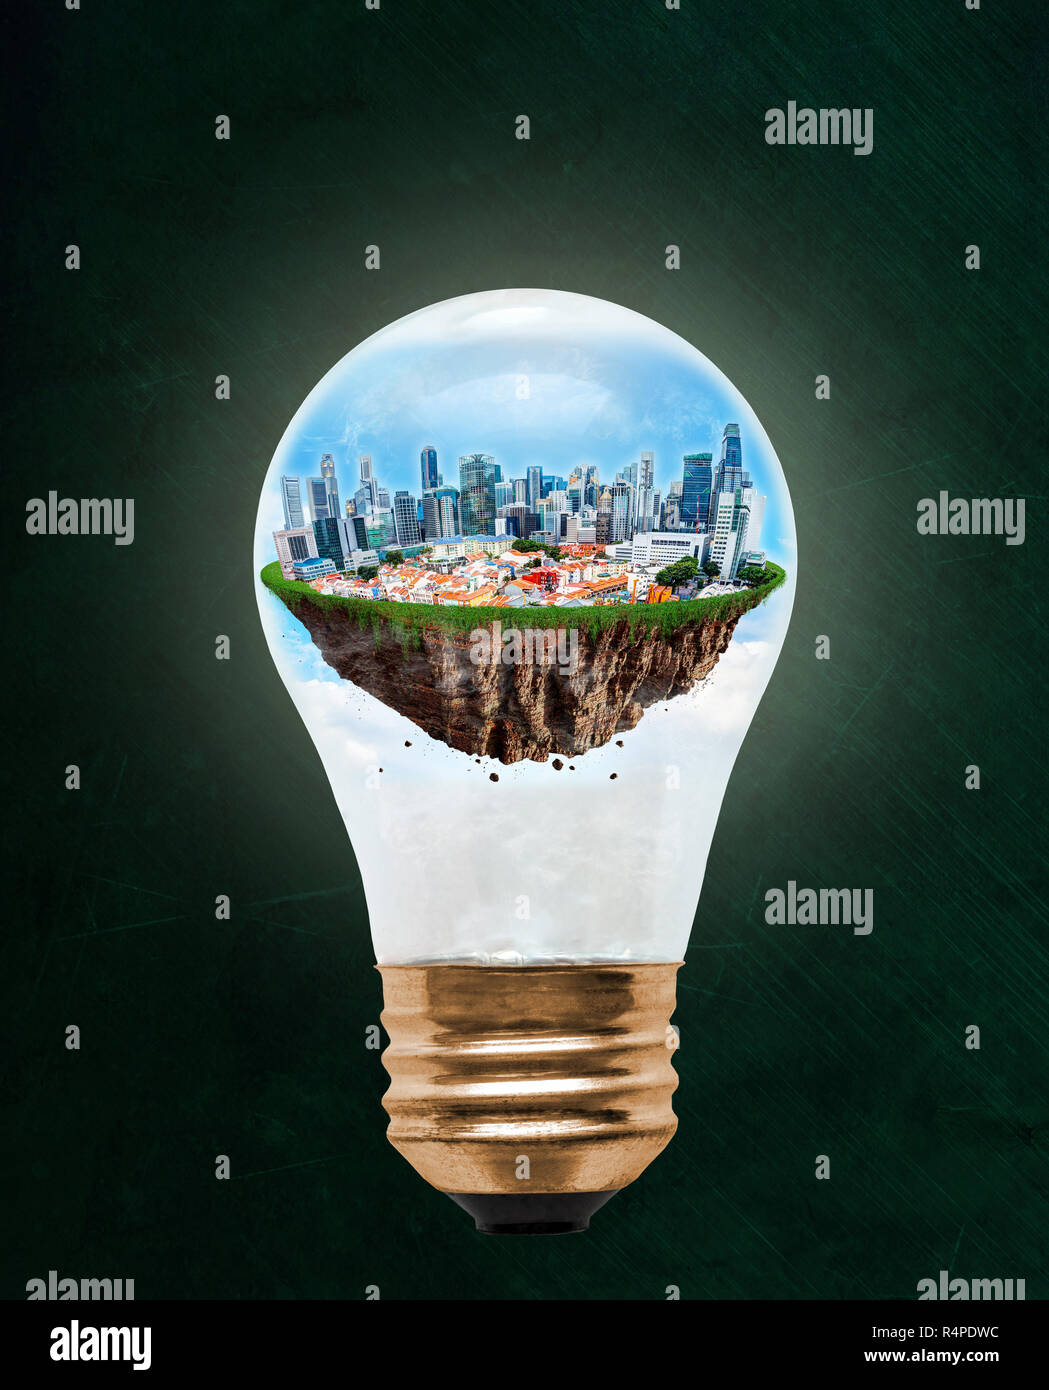 Città galleggiante di Singapore all'interno della lampadina con copia spazio. Concetto di eco-friendly, efficiente nel consumo energetico città e idea di conservazione ambientale in Foto Stock